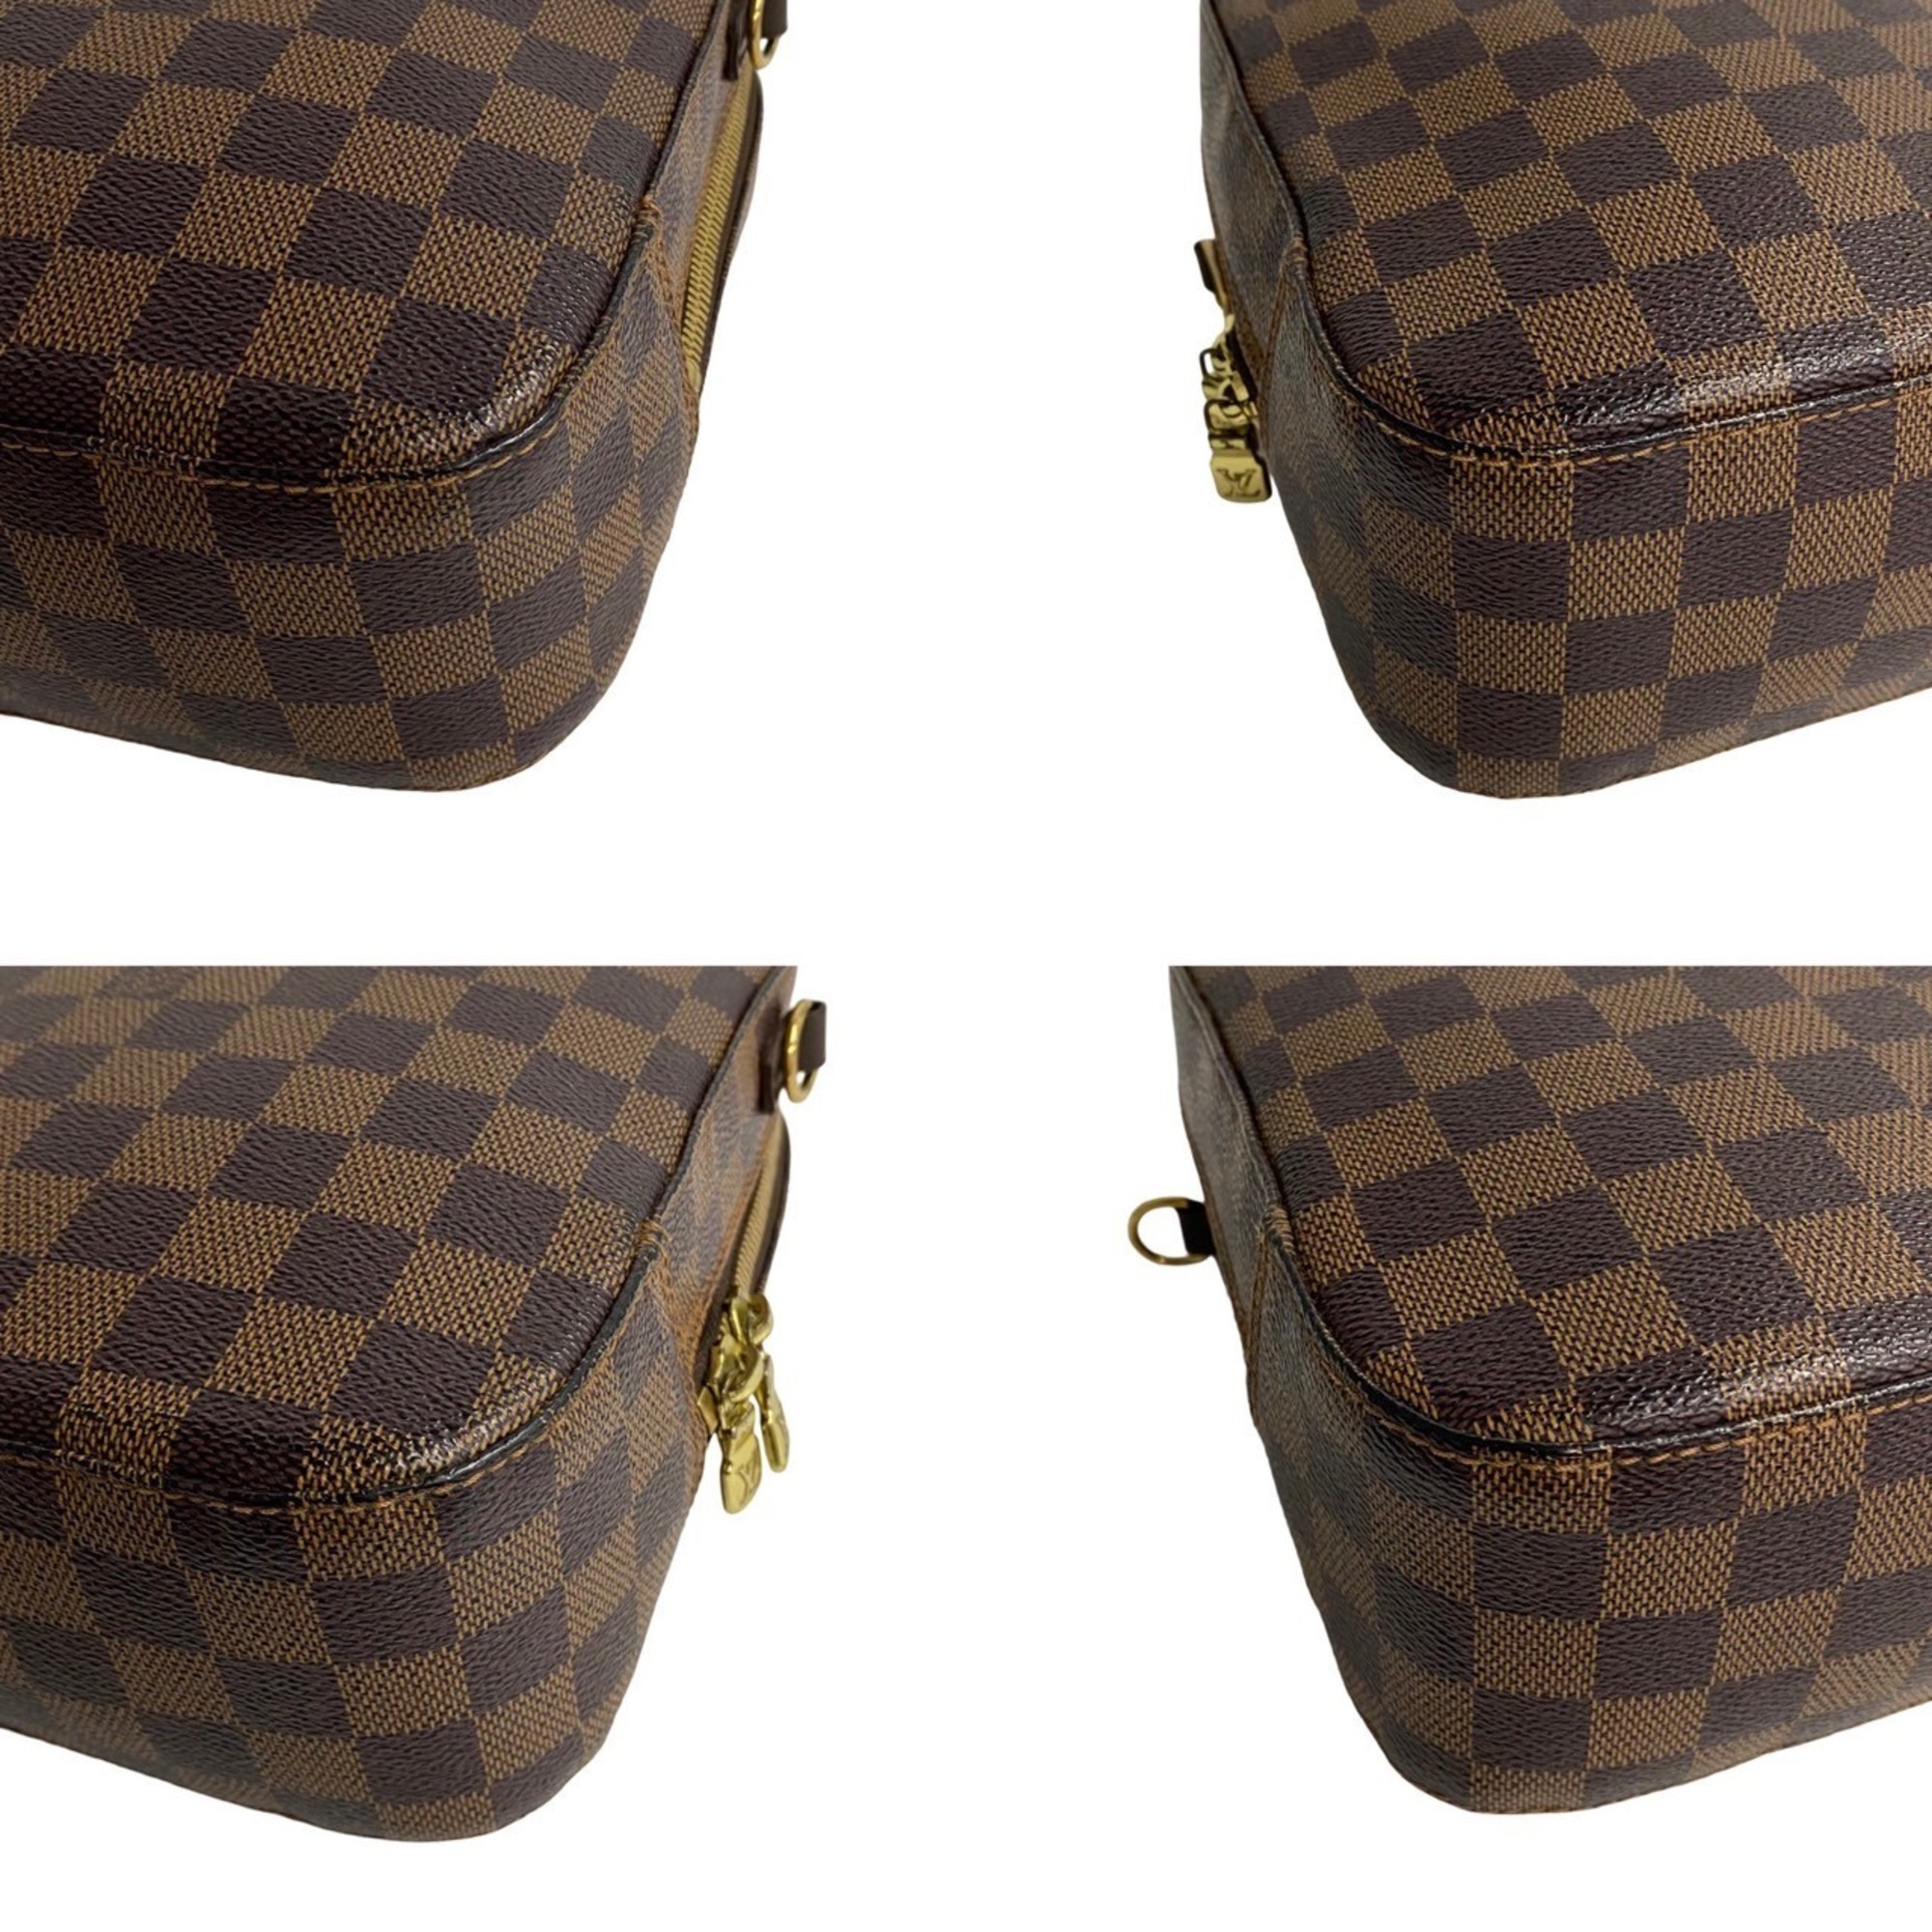 LOUIS VUITTON Louis Vuitton SP Order Spontini Damier Leather 2way Handbag Shoulder Bag Brown 27695